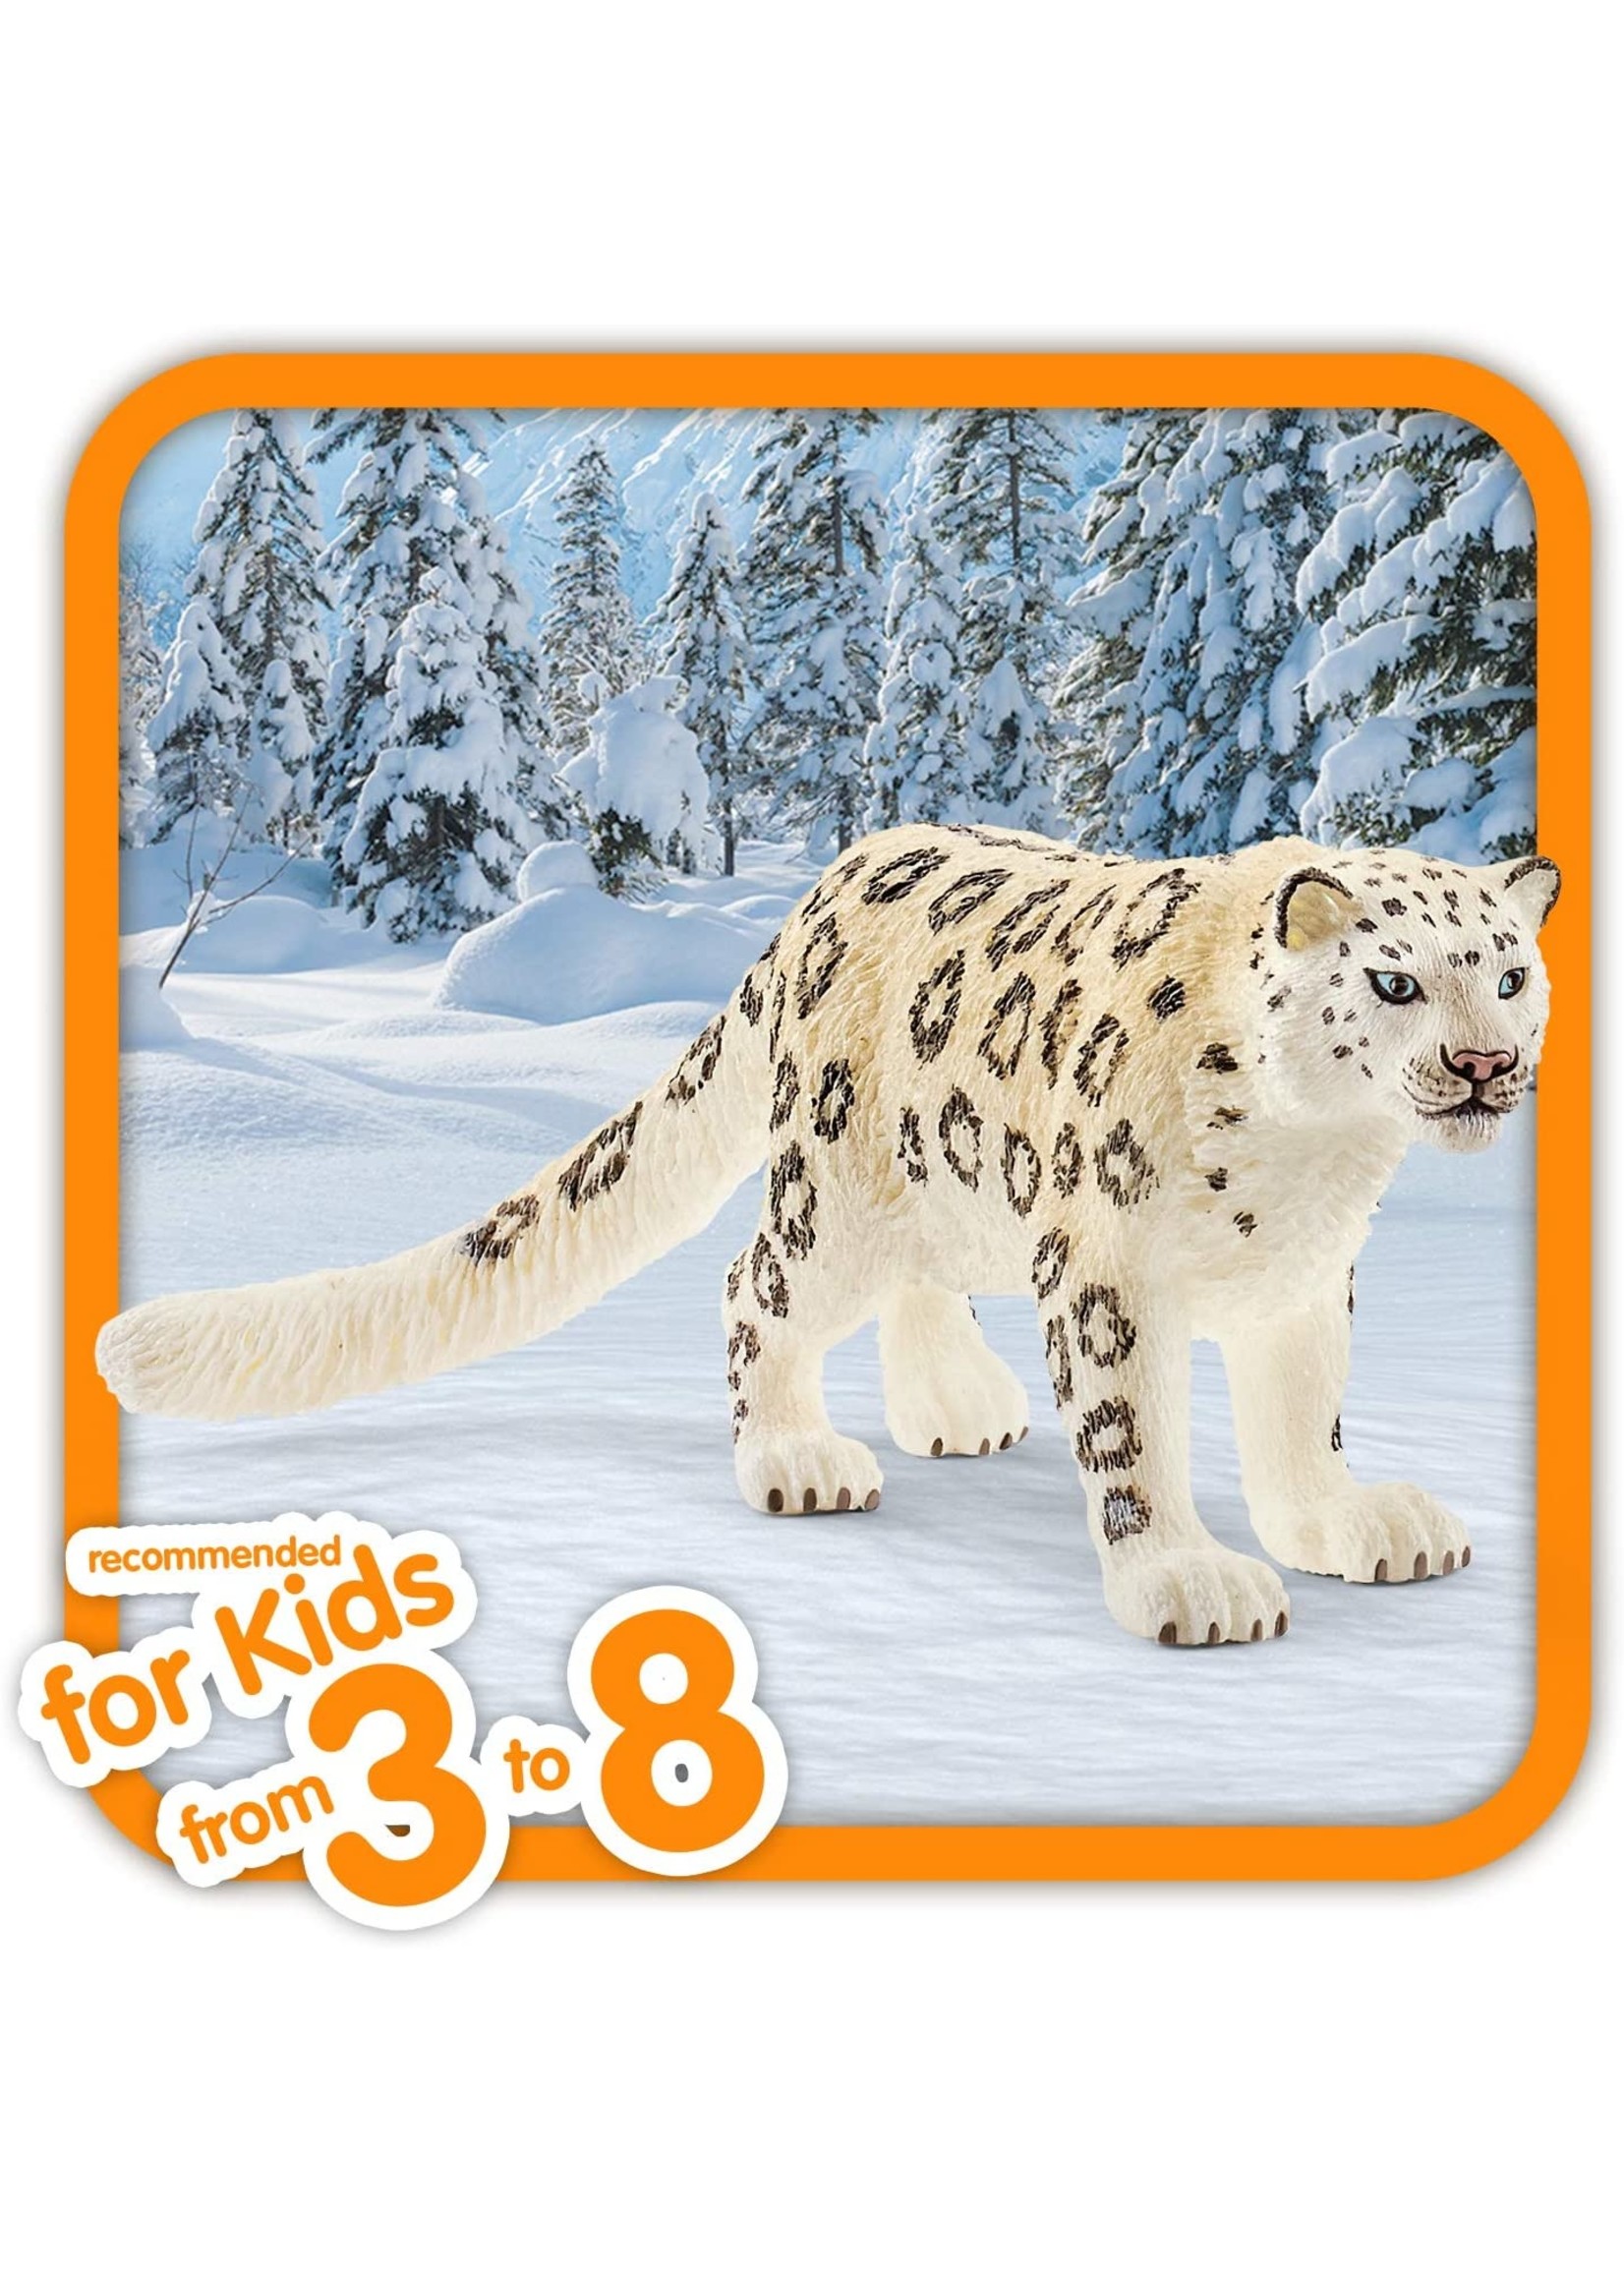 Schleich 14838 - Snow Leopard